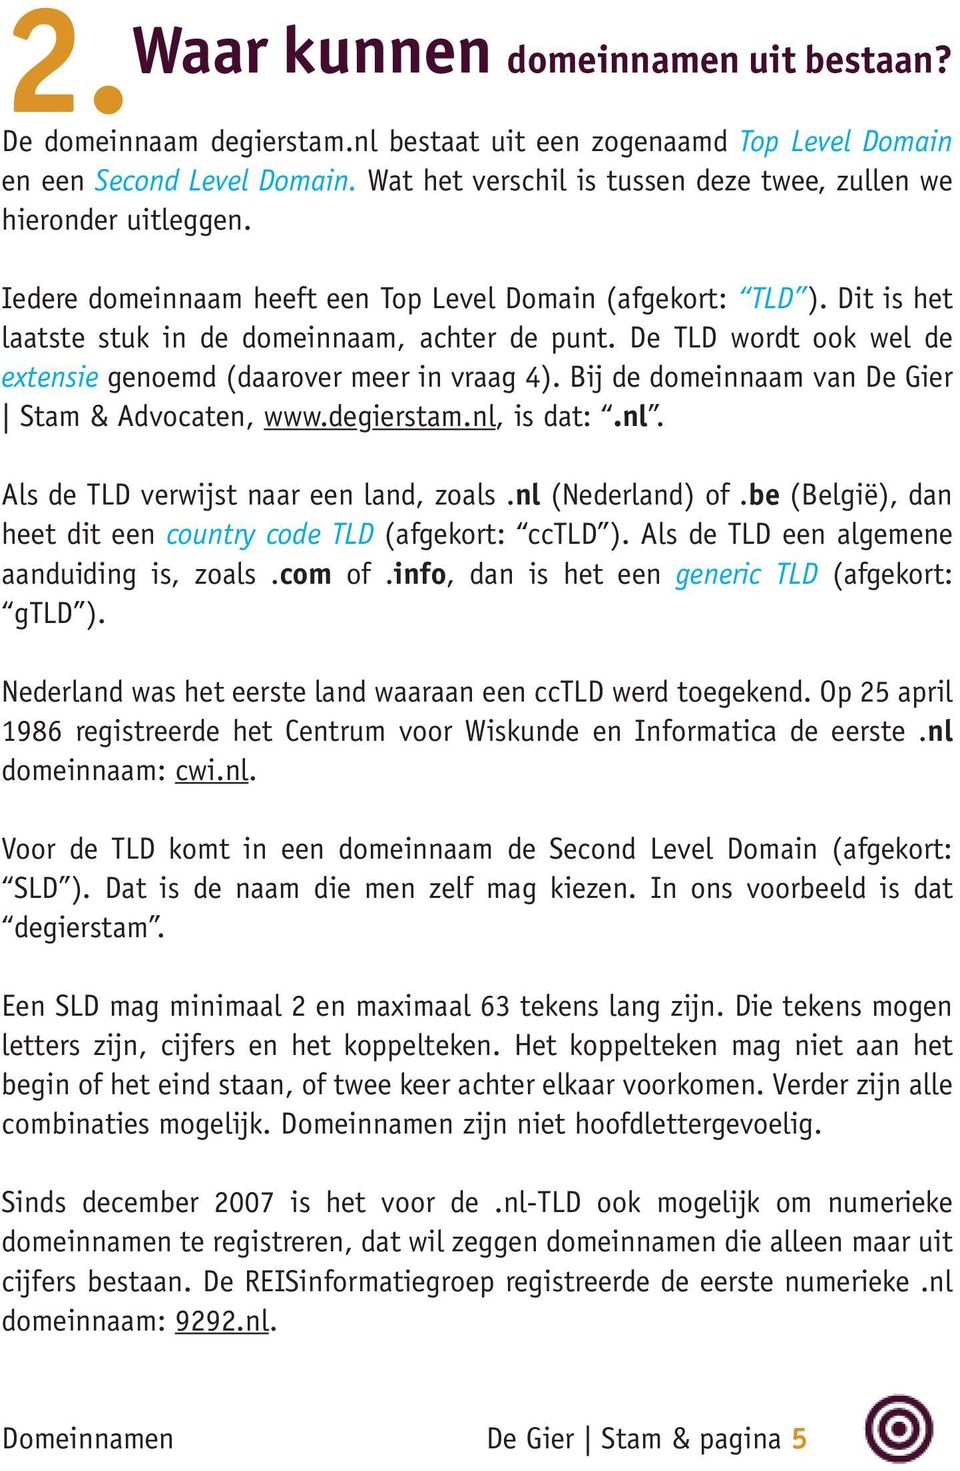 De TLD wordt ook wel de extensie genoemd (daarover meer in vraag 4). Bij de domeinnaam van De Gier Stam & Advocaten, www.degierstam.nl, is dat:.nl. Als de TLD verwijst naar een land, zoals.